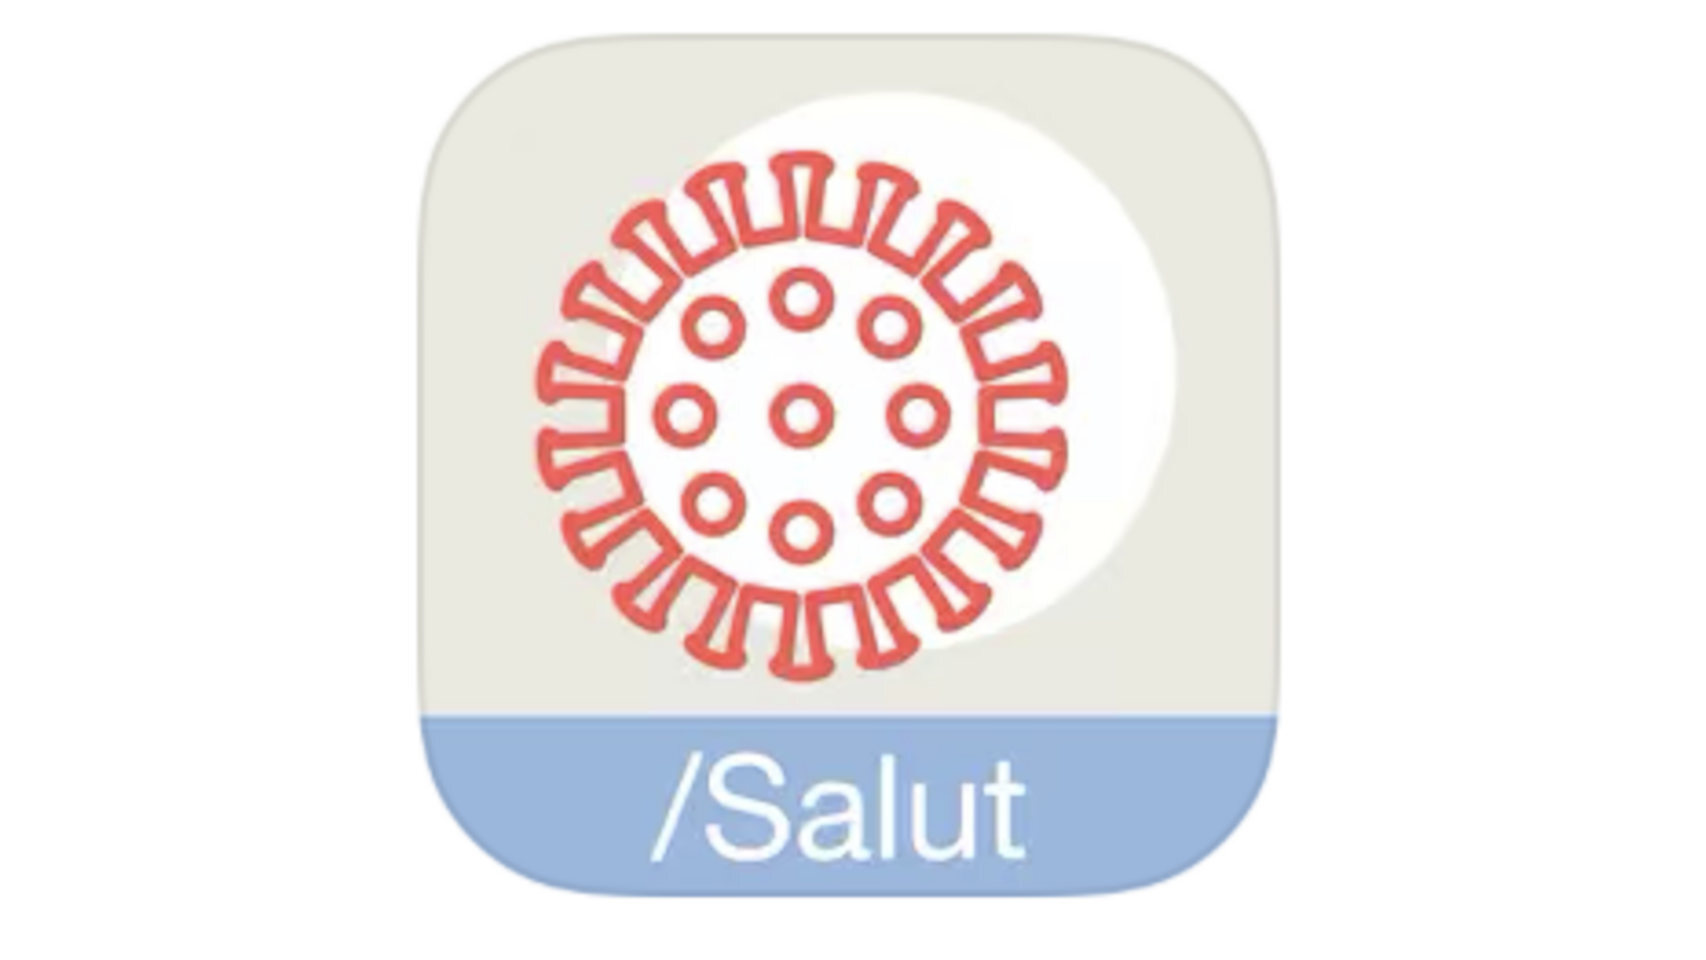 Icono de la app oficial contra el COVID-19 de la Generalitat